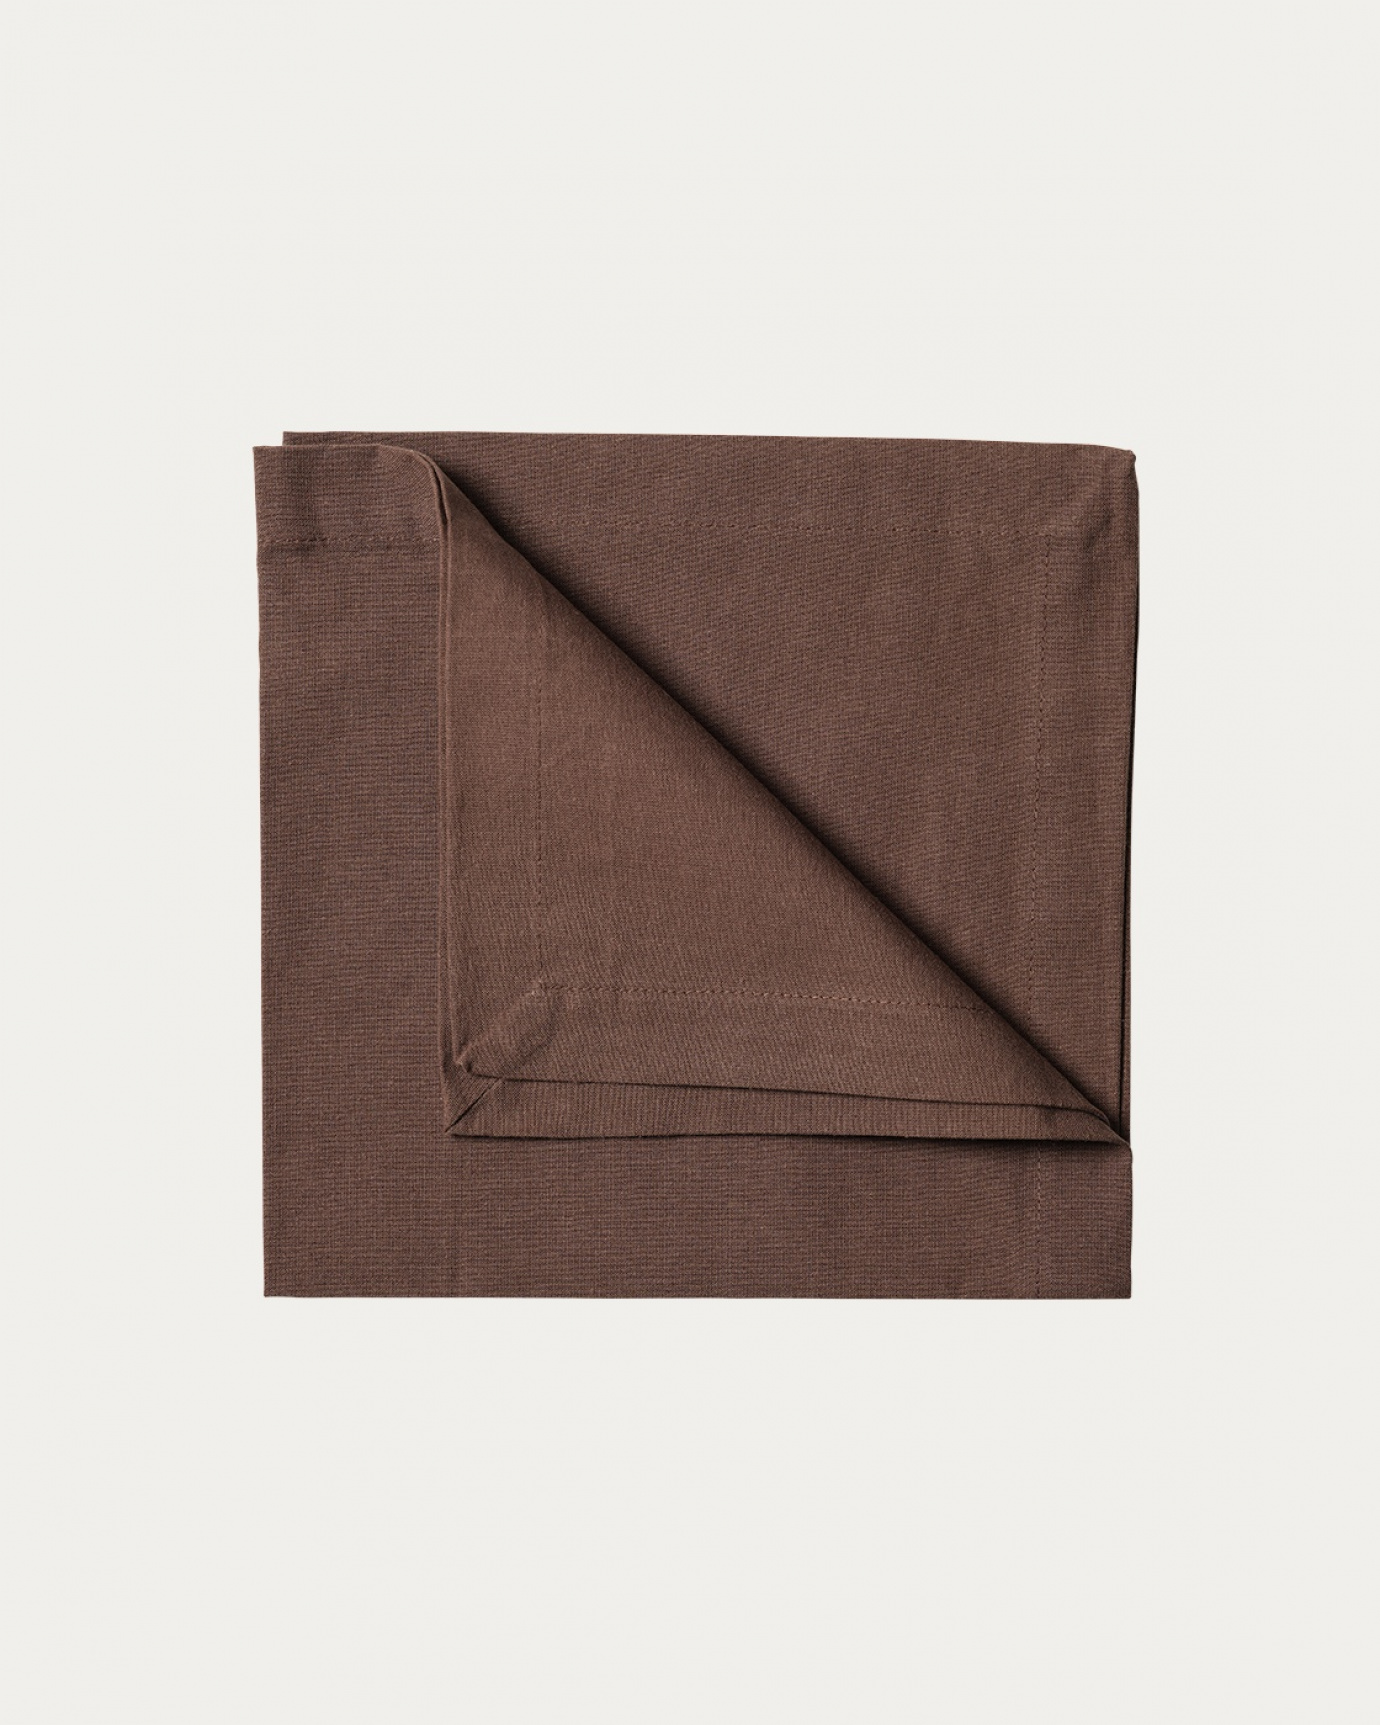 Produktbild bärenbraun ROBERT Serviette aus weicher Baumwolle von LINUM DESIGN. Größe 45x45 cm und in 4er-Pack verkauft.